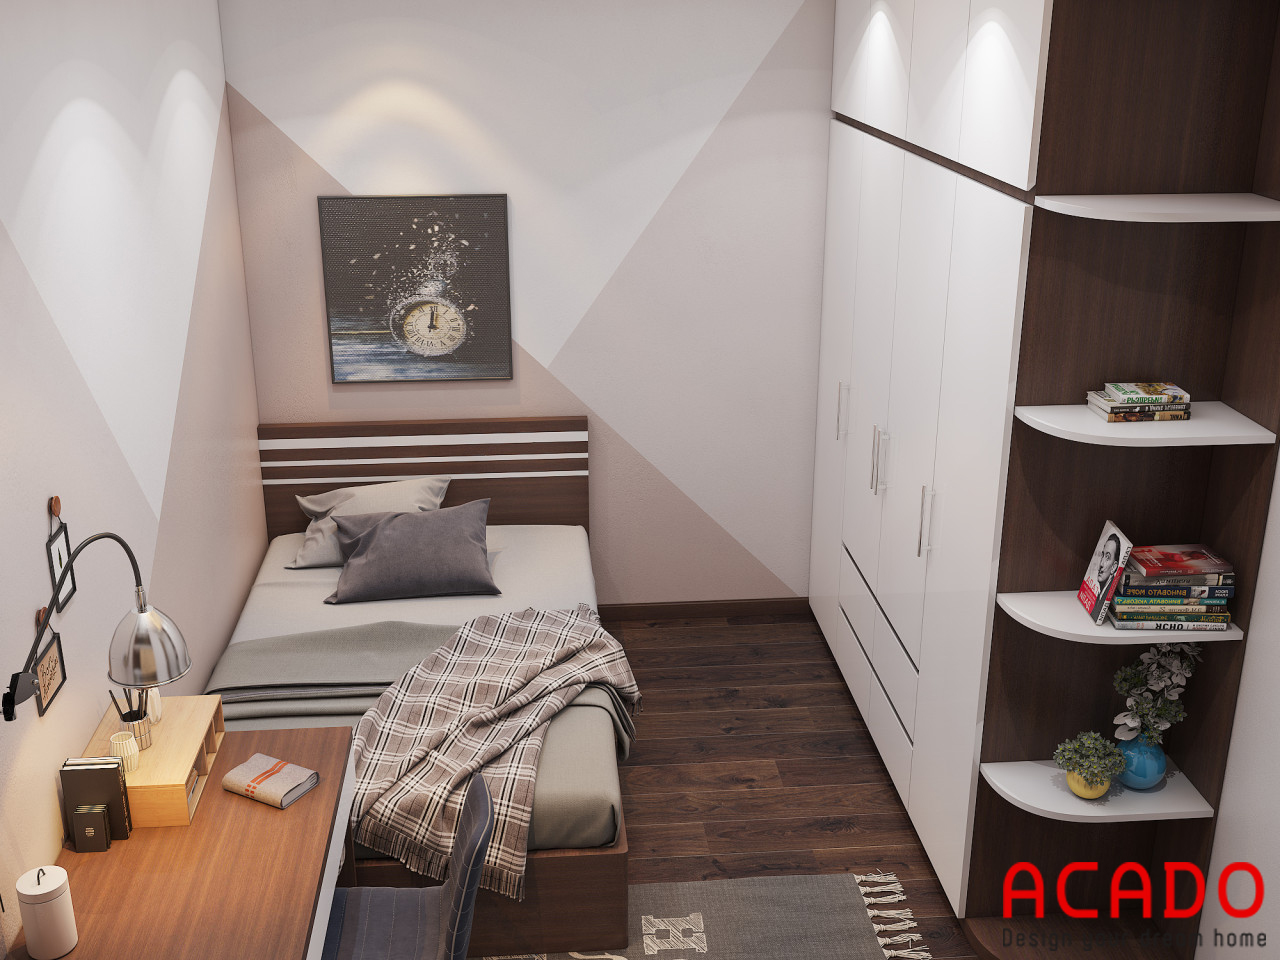 Phòng ngủ có diện tích hẹp nên ACADO chỉ thiết kế giường ngủ 1m2x2m để tiết kiệm không gian